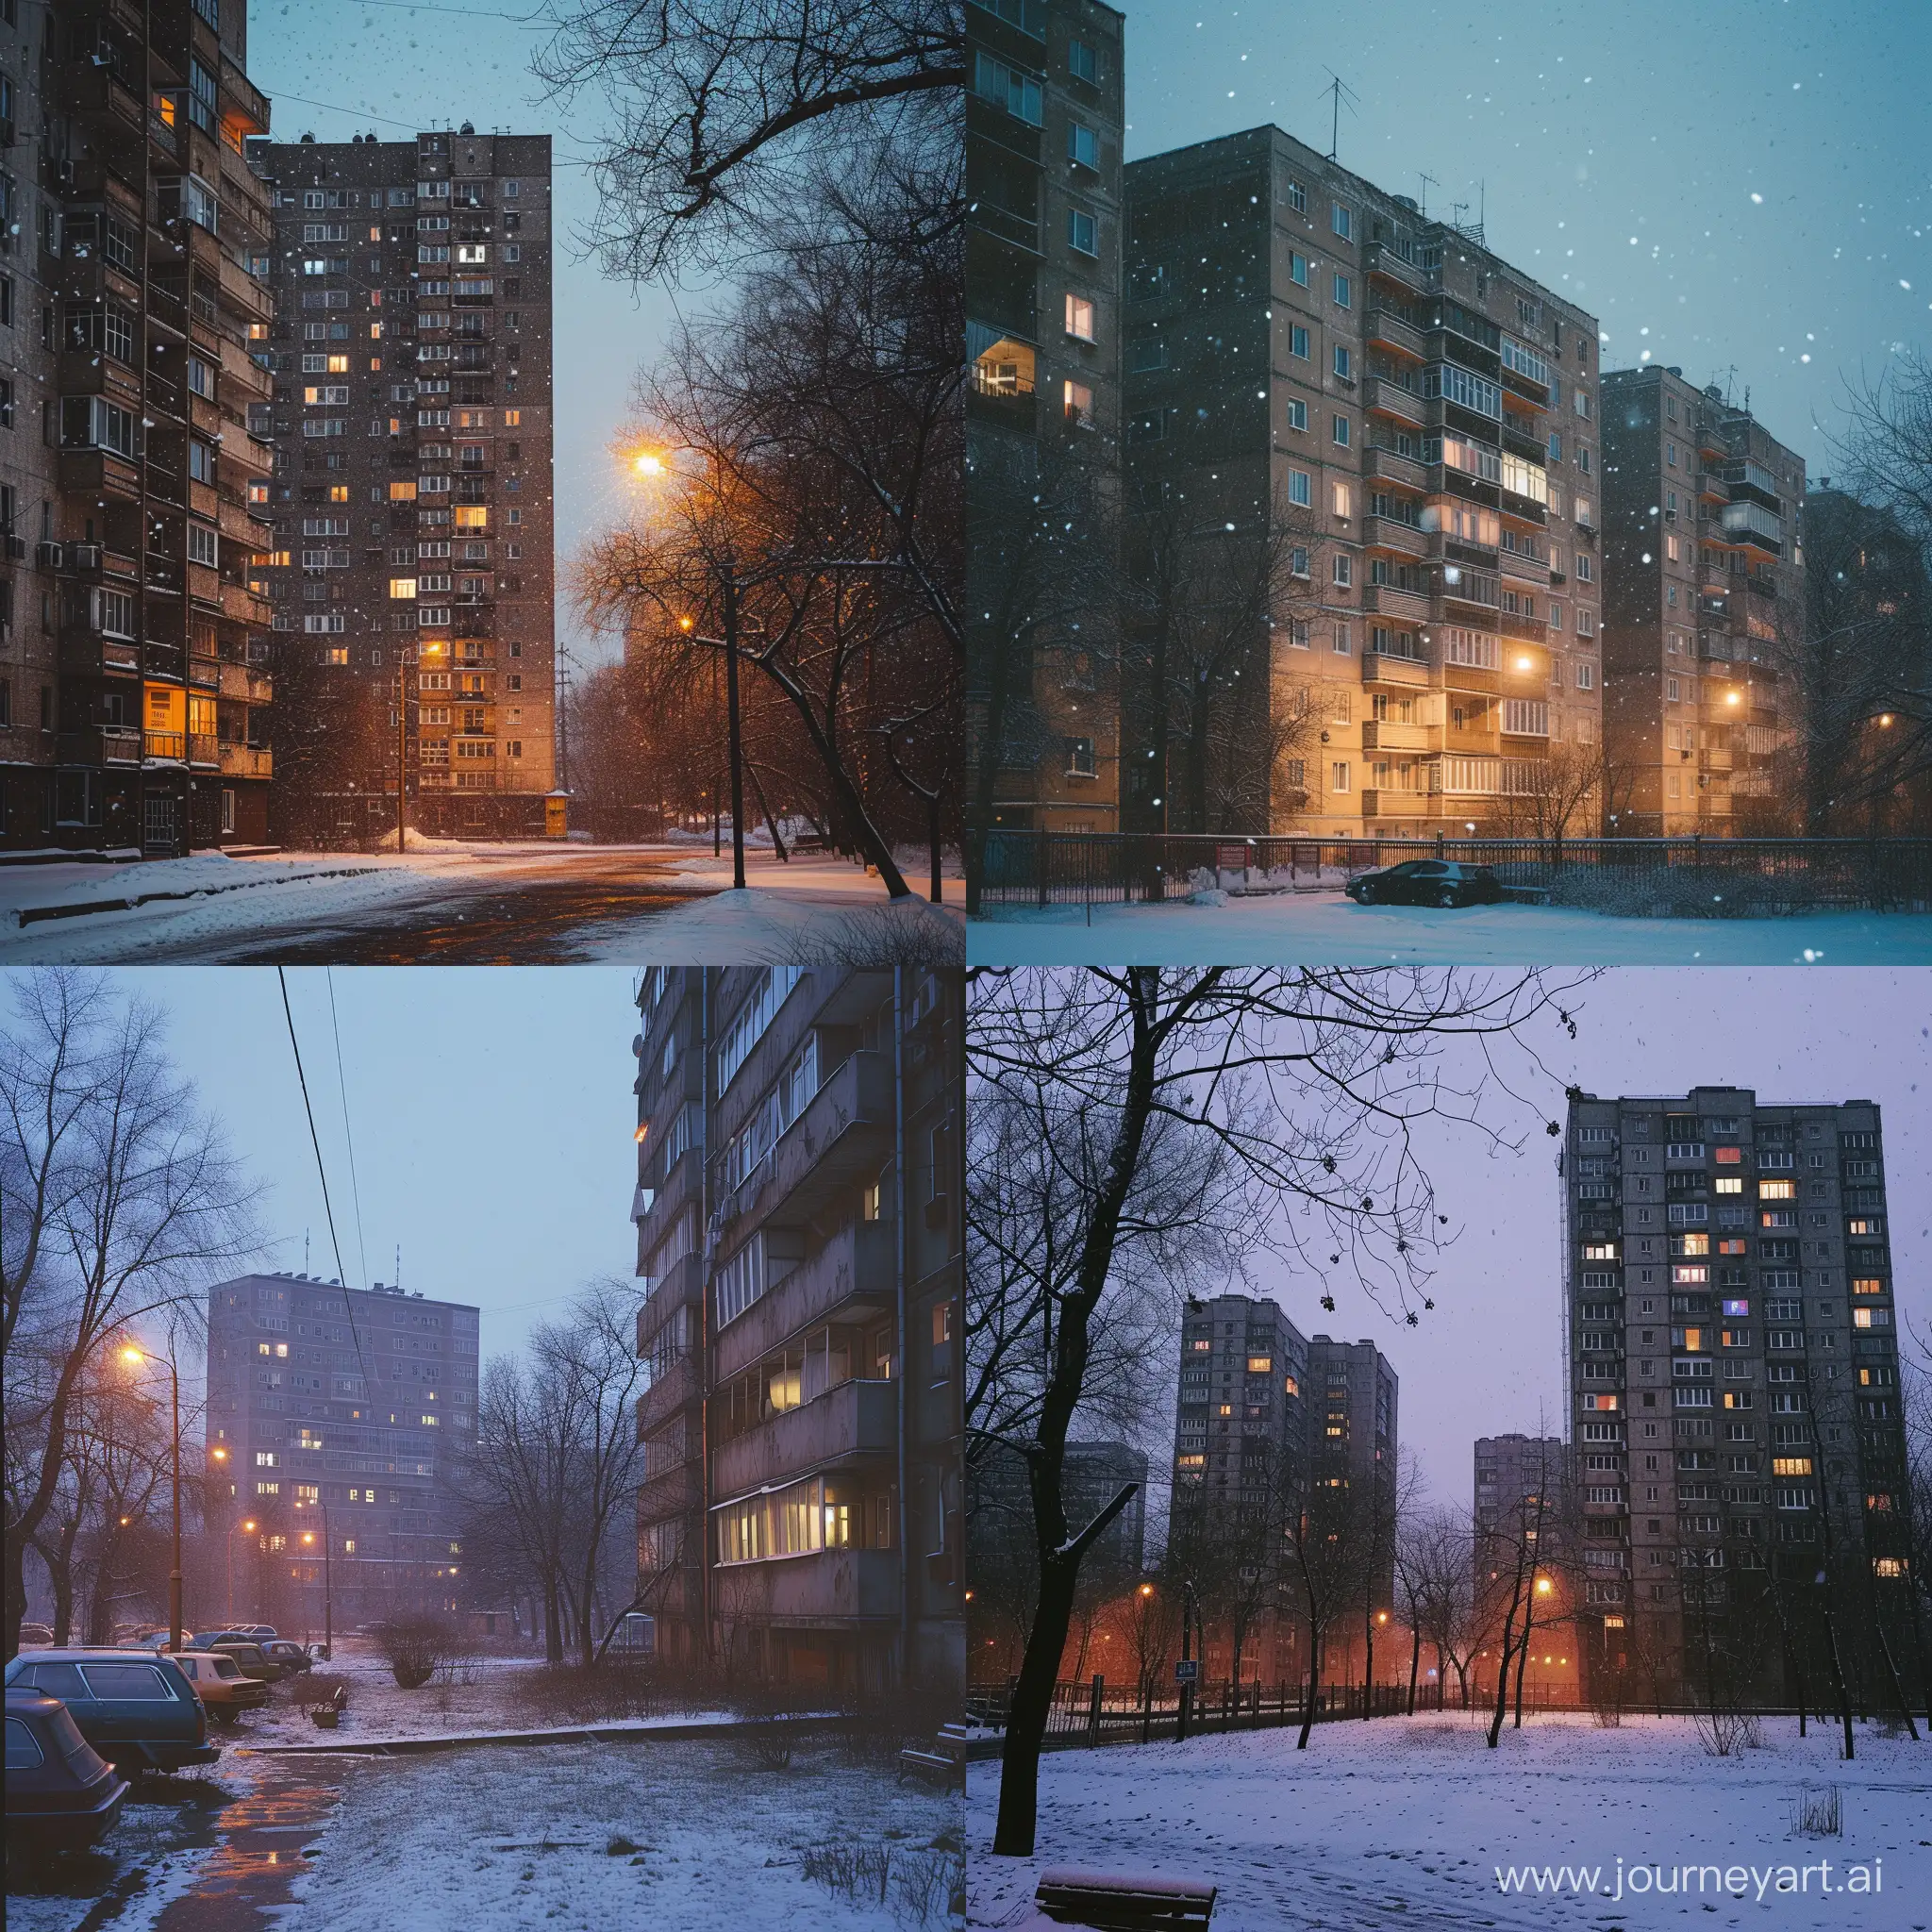 Russia, soviet post modernism buildings, evening, a little snowfall, evening.